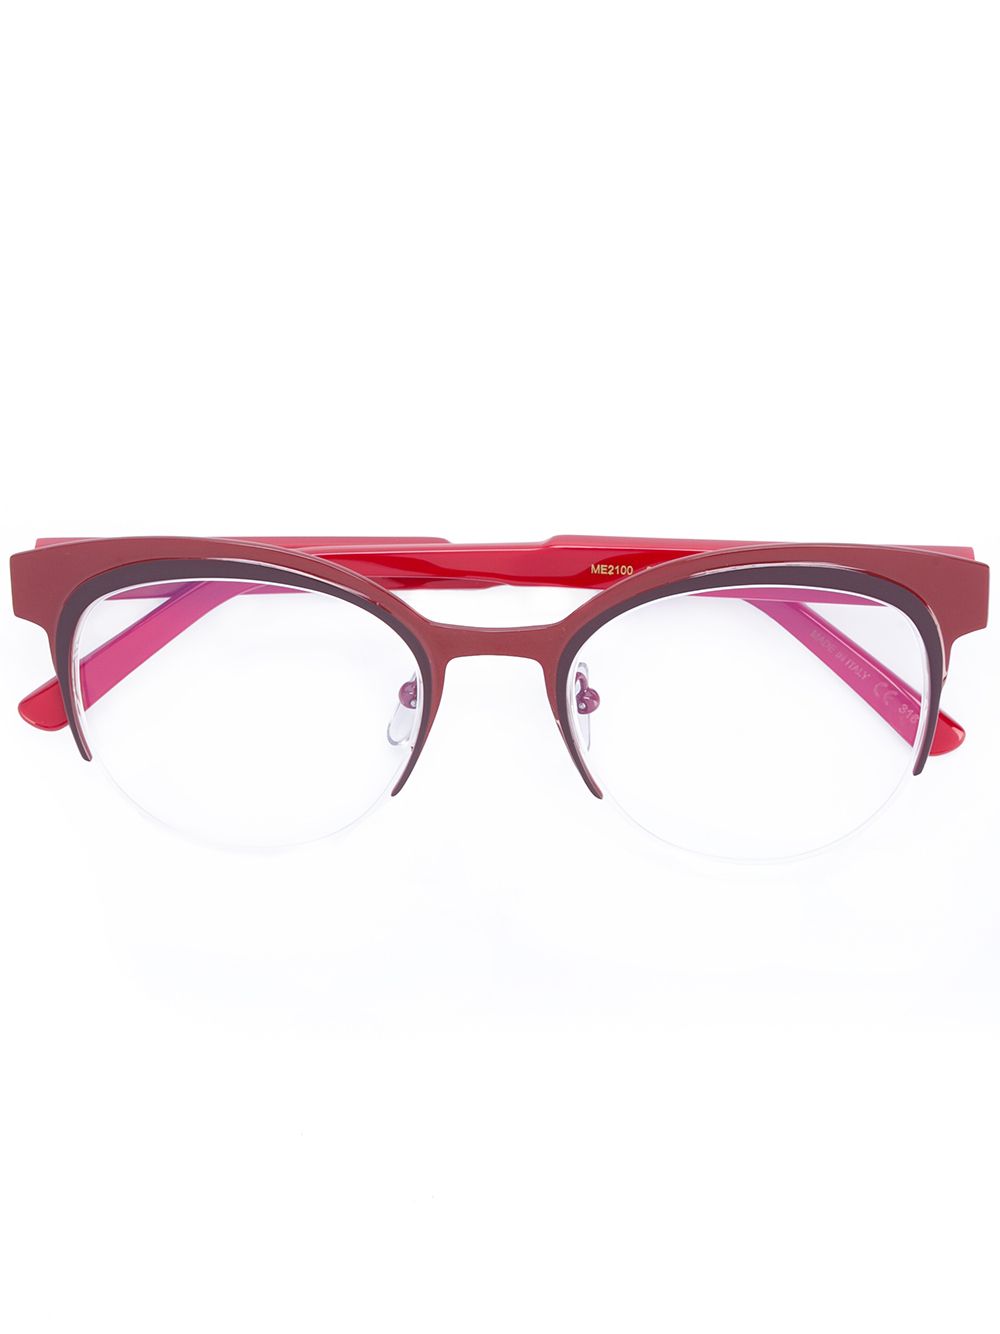 Marni Eyewear ME2100 glasses - Red von Marni Eyewear